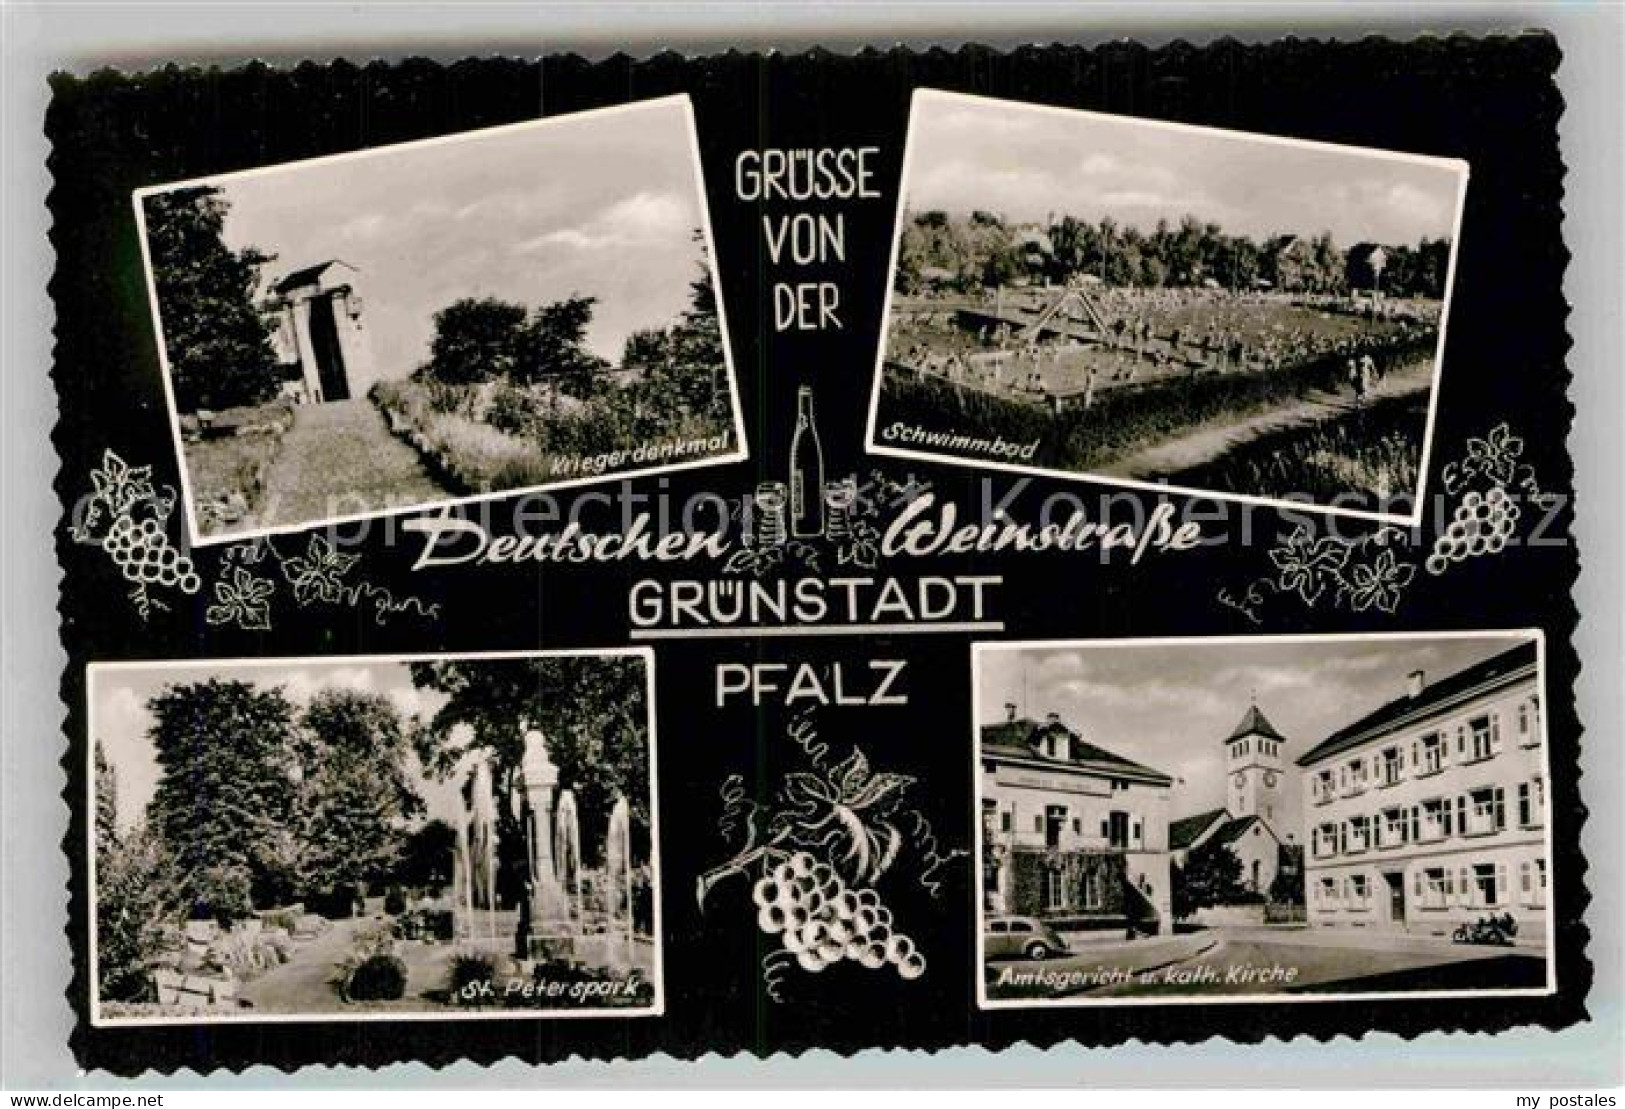 42876295 Gruenstadt Kriegerdenkmal Schwimmbad St Peterspark Amtsgericht Kath Kir - Gruenstadt